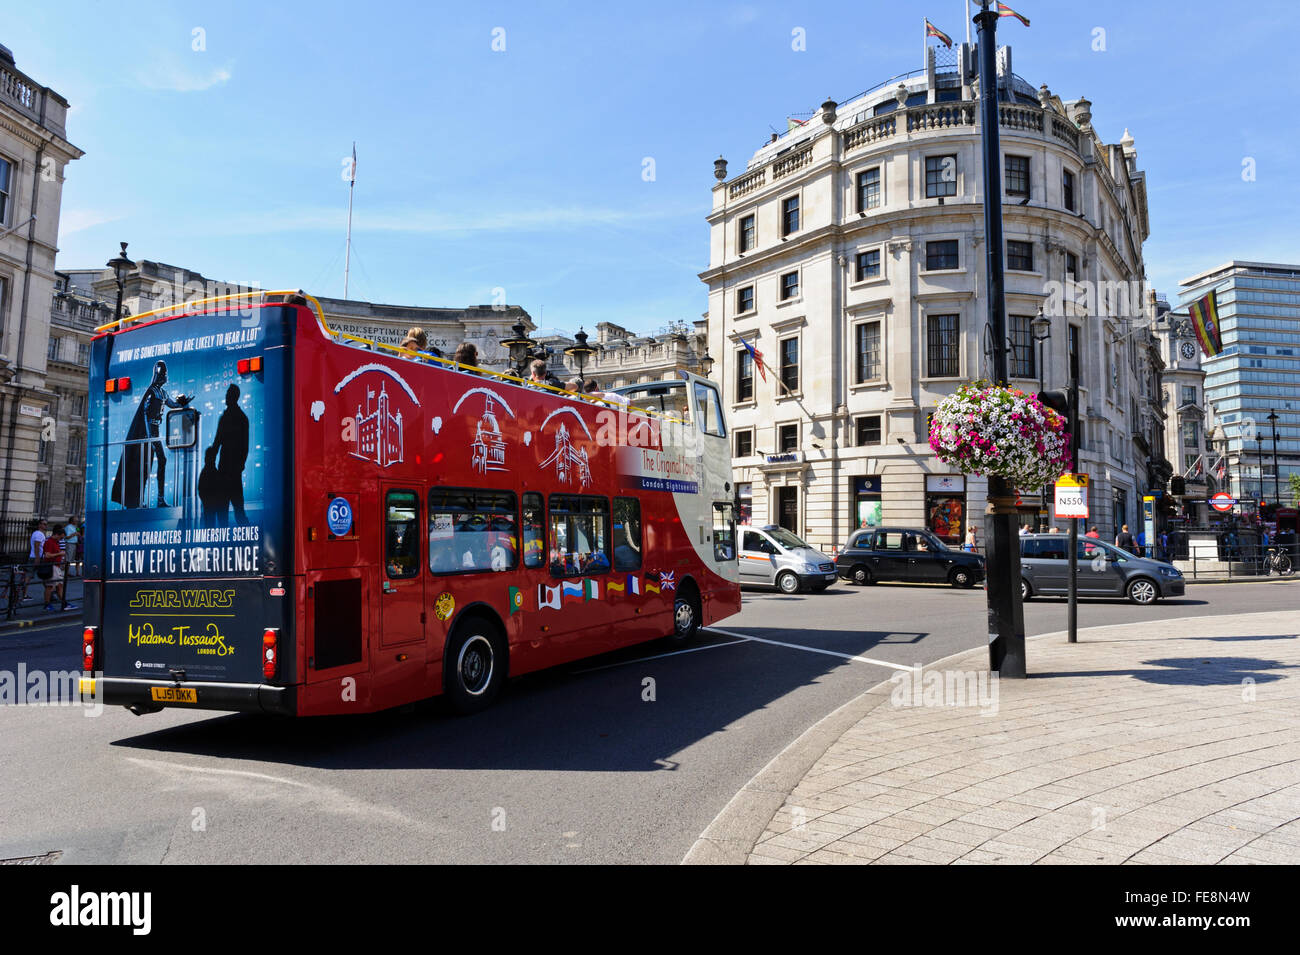 Eine moderne rote Bus Reisen in der Nähe von Trafalgar Square, London, Vereinigtes Königreich. Stockfoto